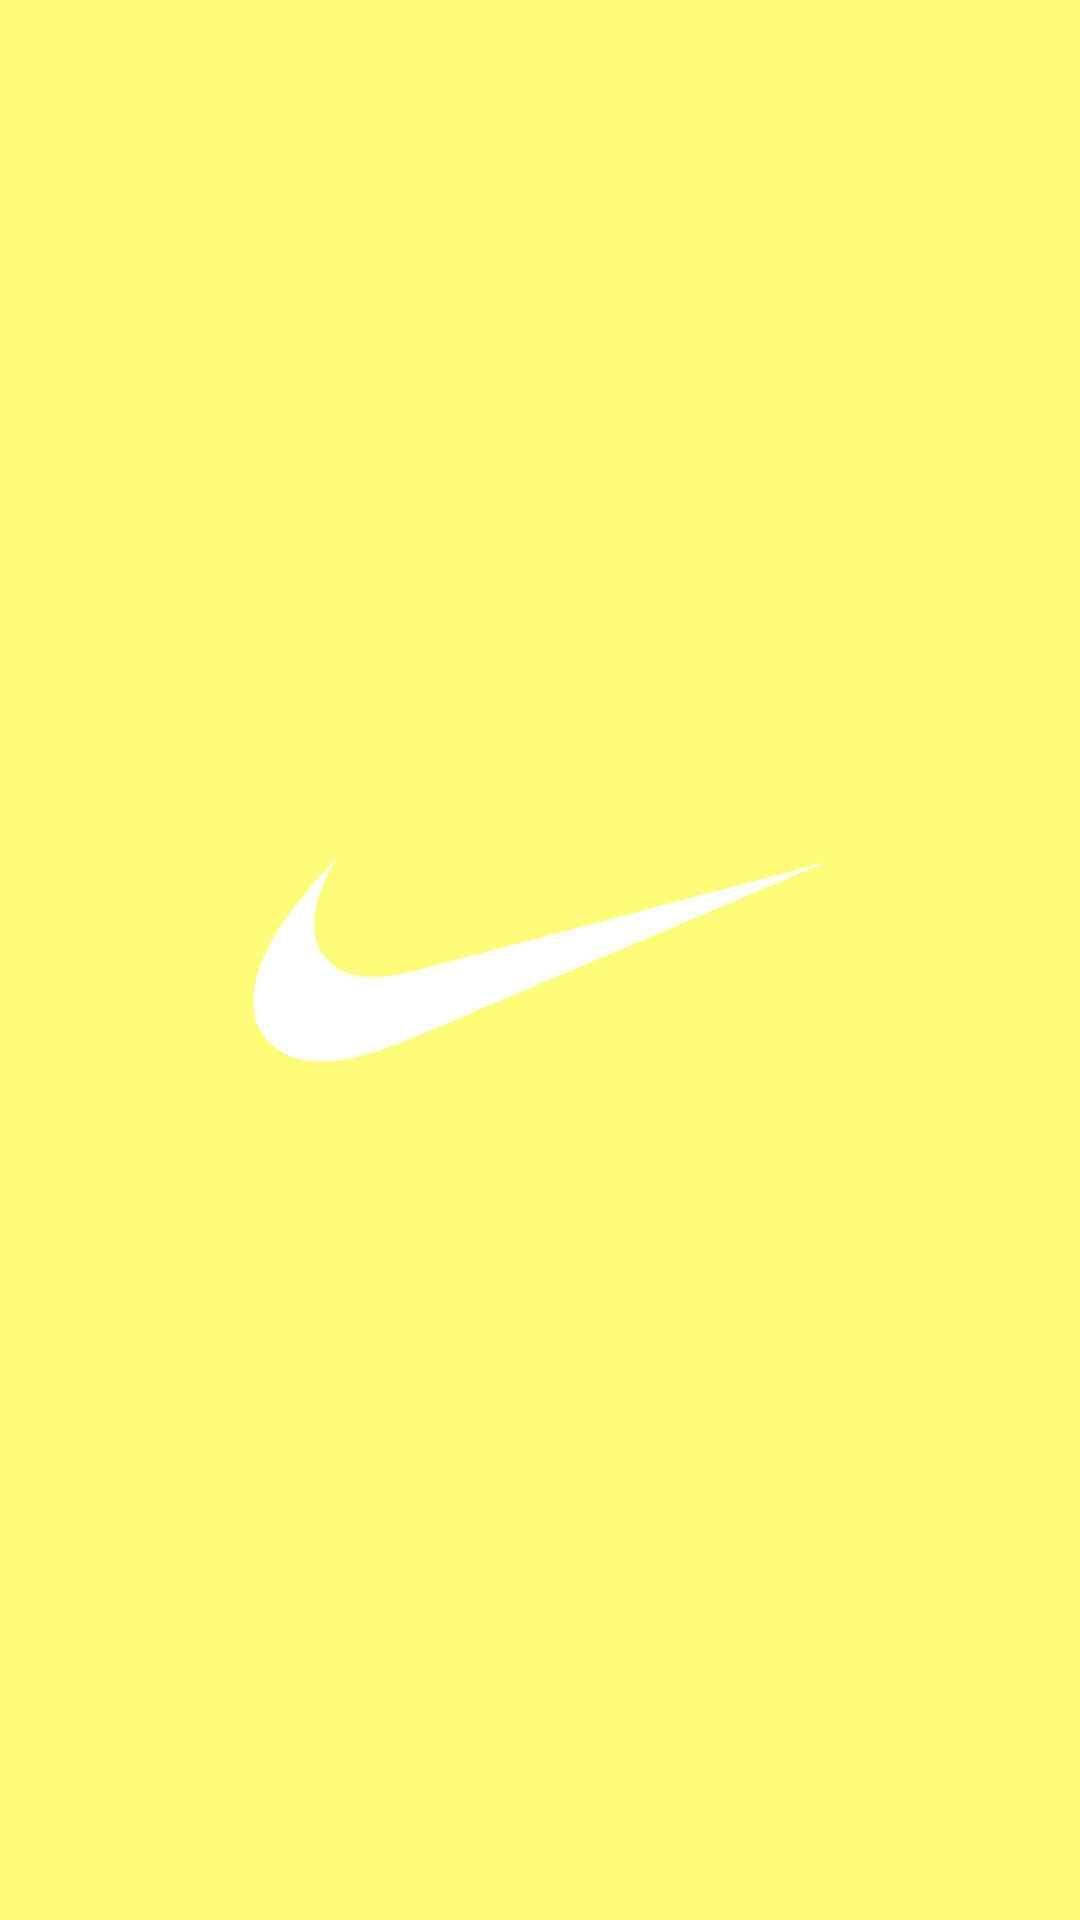 Mesmerizing Splash Of Cute Pastel Yellow Aesthetic With Iconic Nike Logo